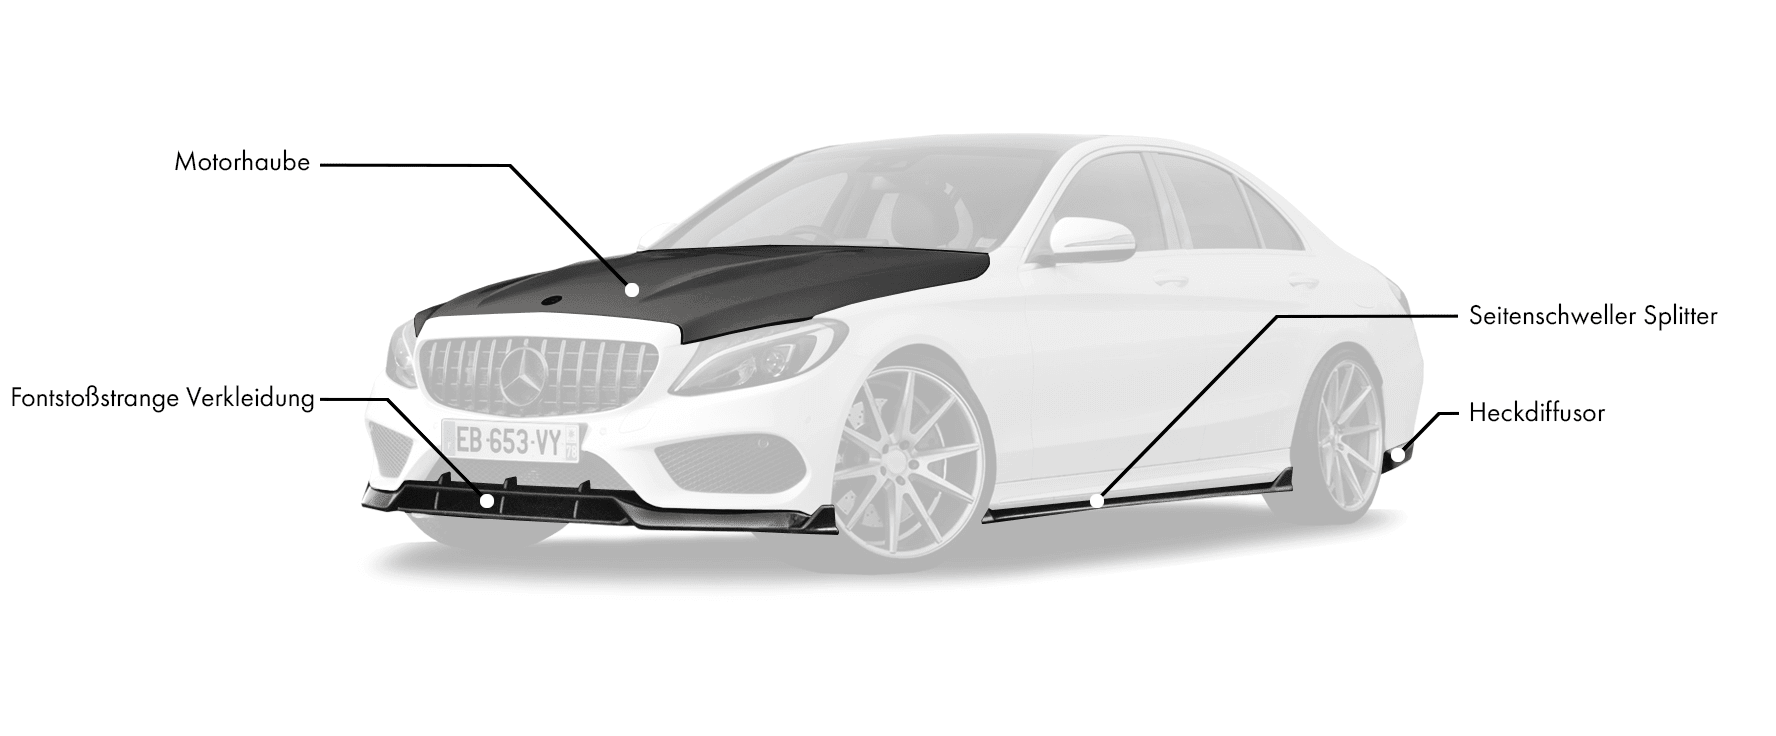 Body-Kits für Mercedes-Benz C-Class W205 enthält